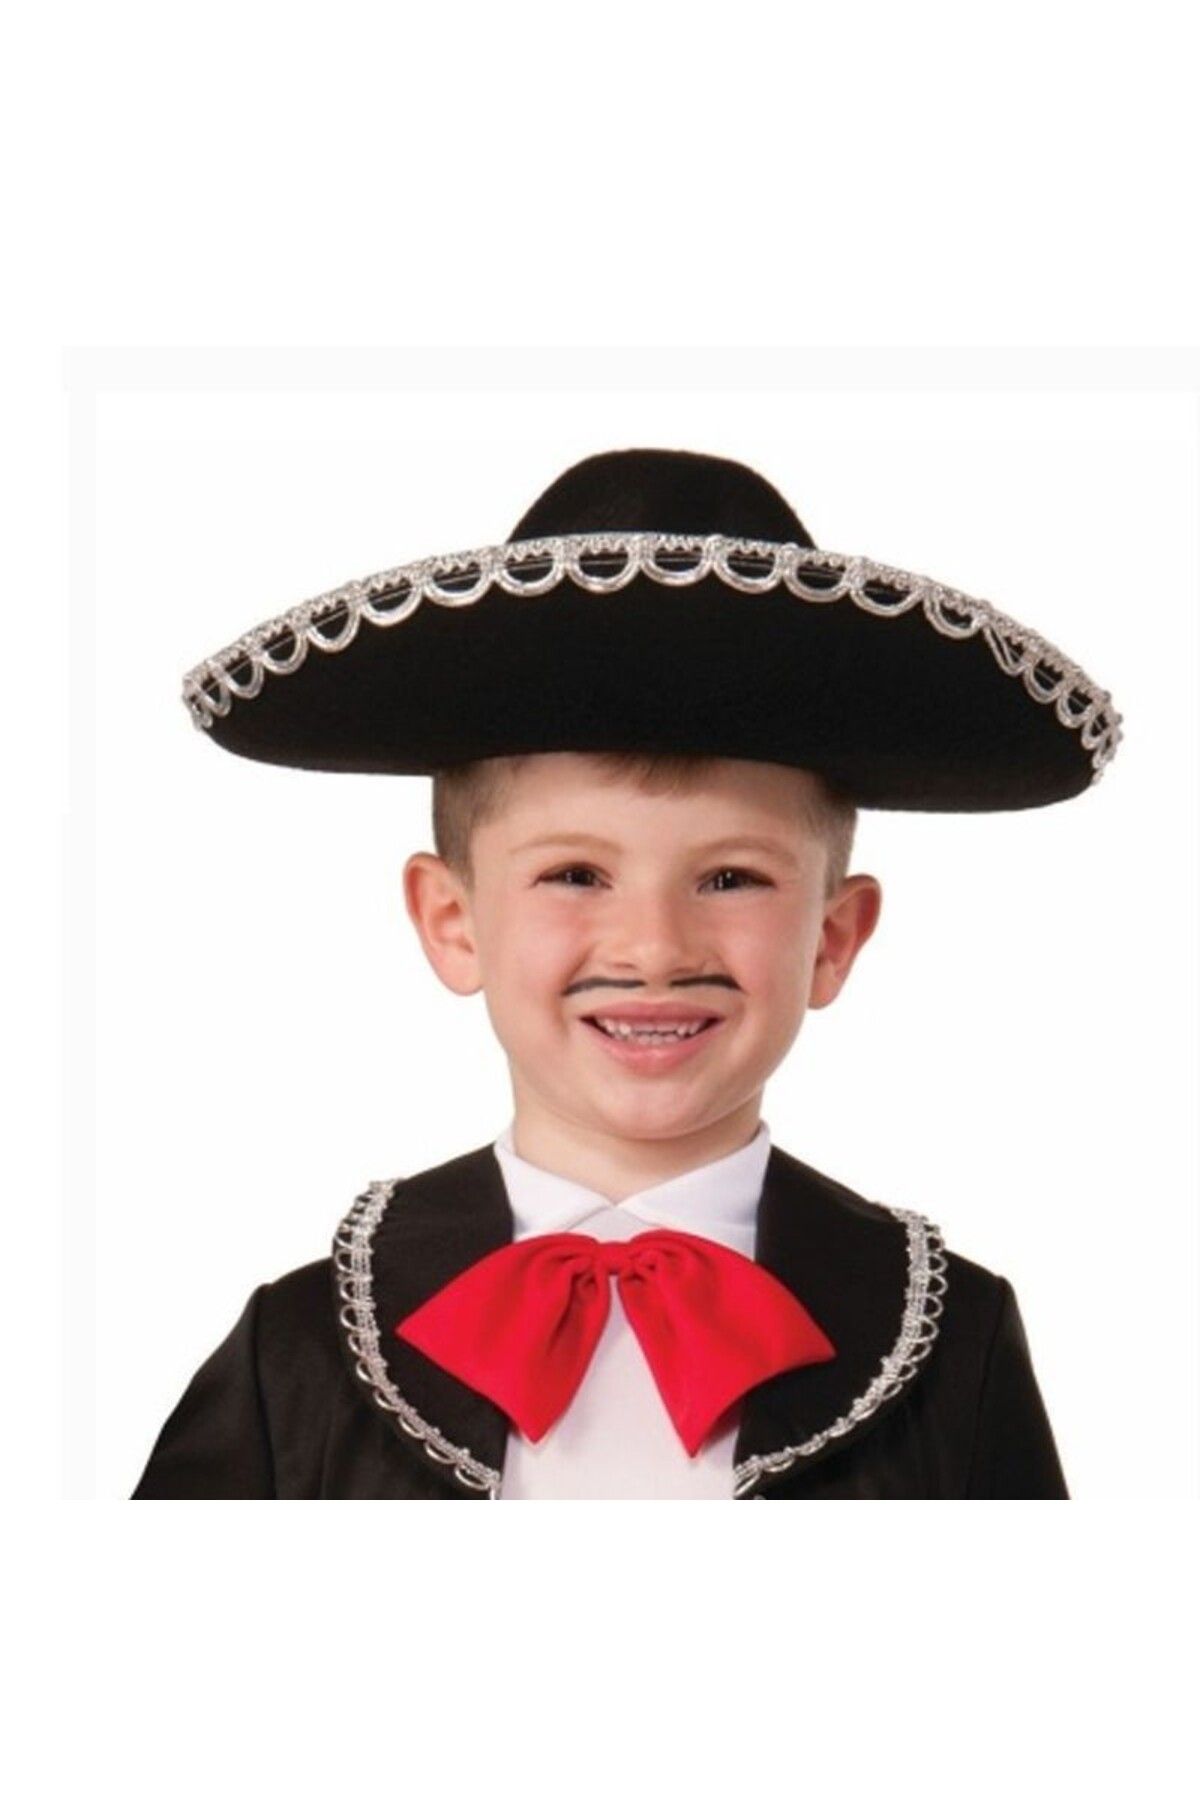 HİMARRY Himarry Gümüş Renk Şeritli Meksika Mariachi Latin Şapkası 55 Cm Çocuk